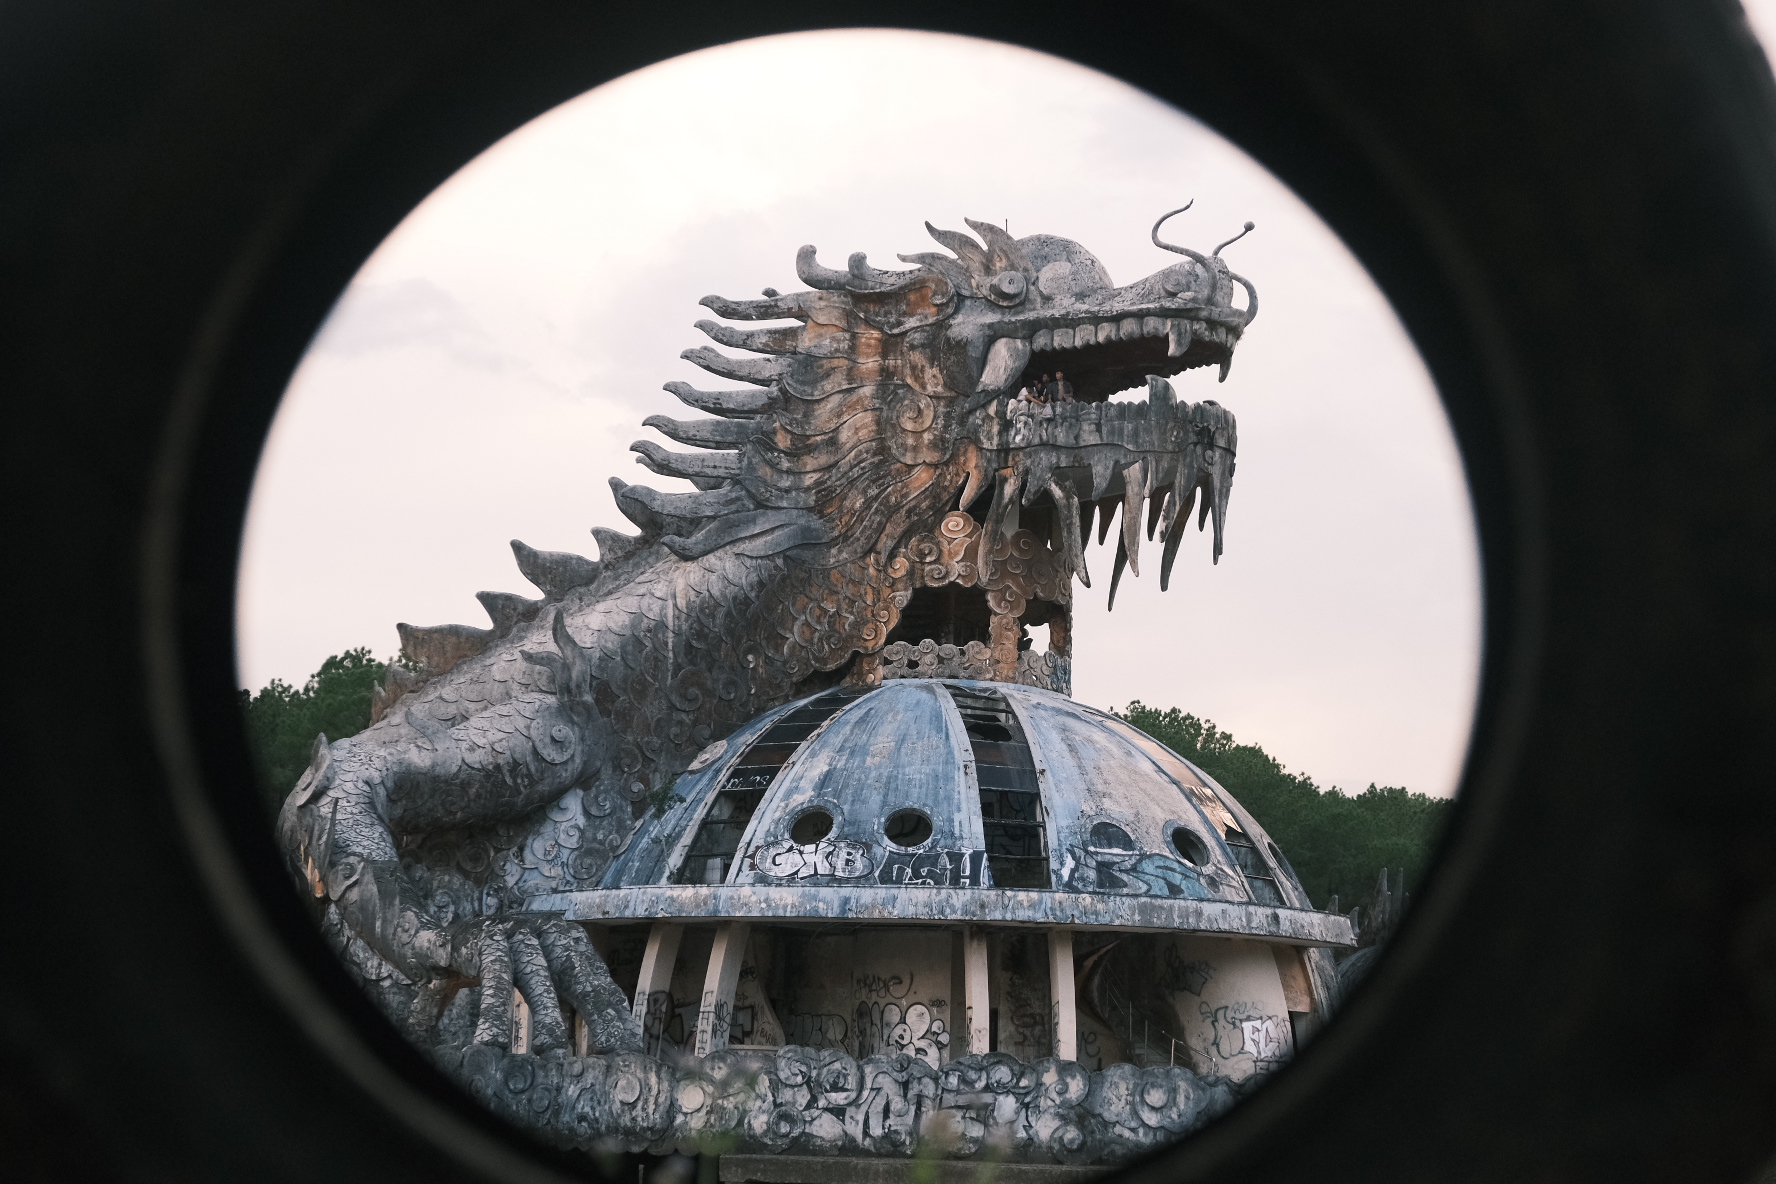 Điểm nhấn của công viên này chính là hình tượng con rồng khổng lồ uốn lượn ở khu nhà thủy cung. Biểu tượng to lớn và độc đáo đã trở thành nơi lí tưởng để du khách check-in. 